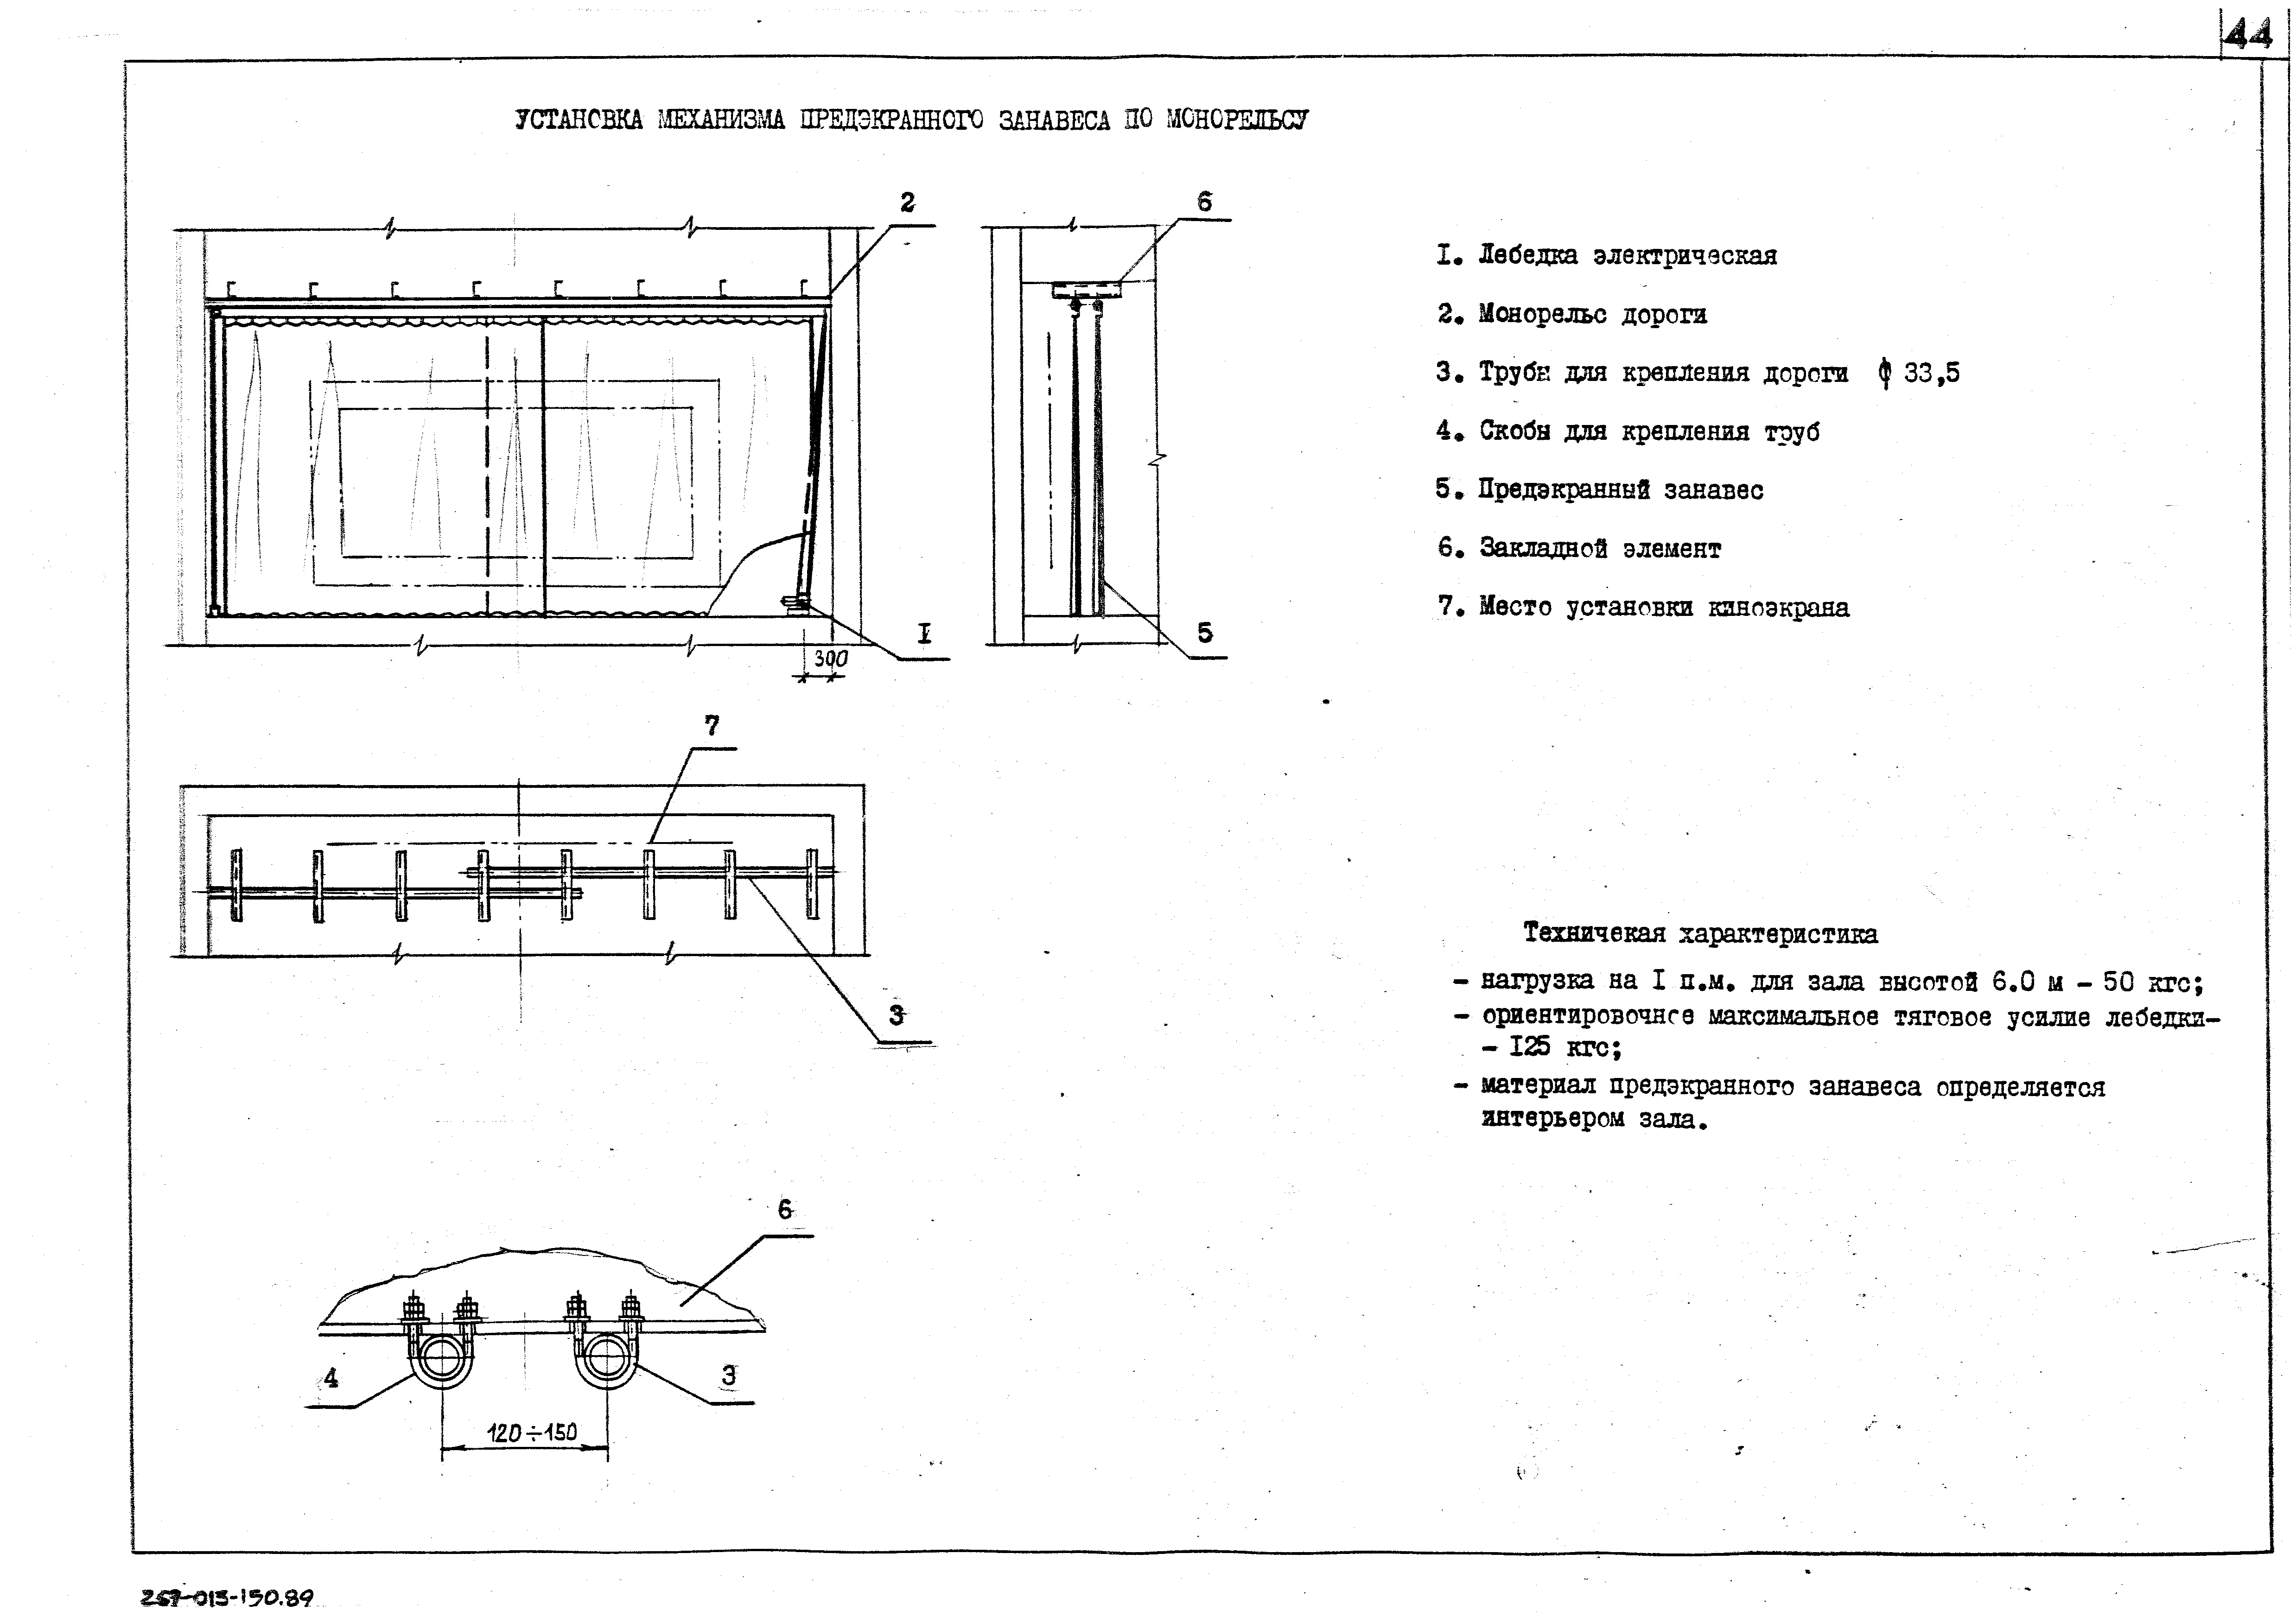 Схема вентиляции зрительного зала